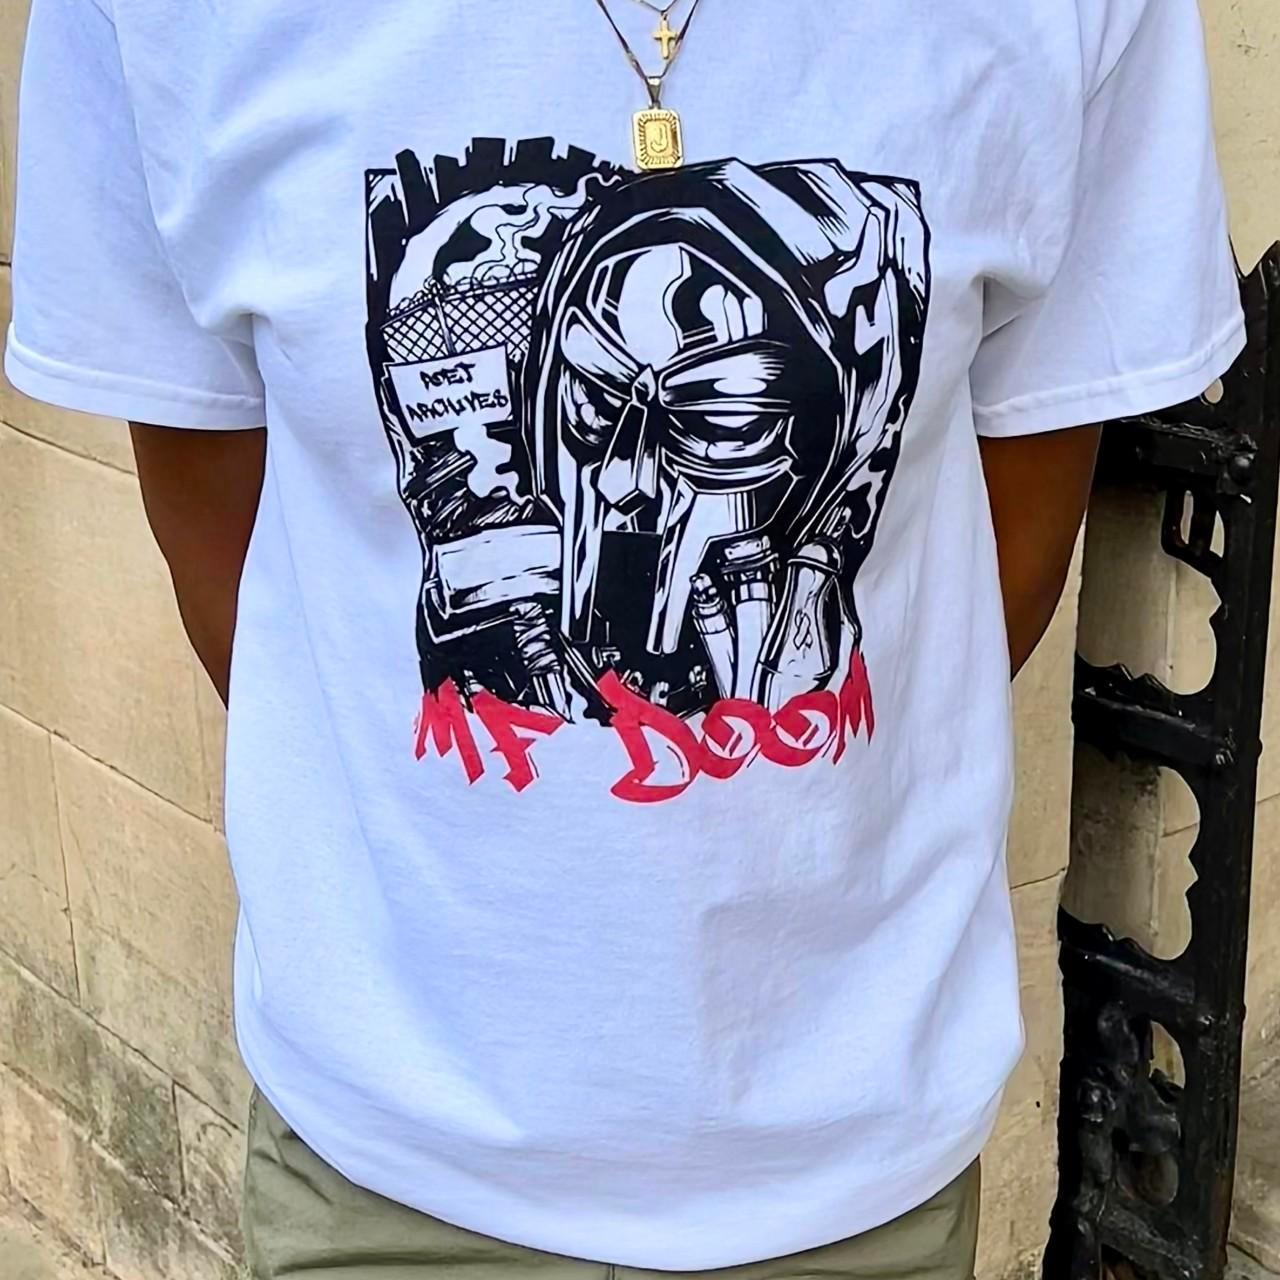 MF Doom T-Shirt - Poet Archives